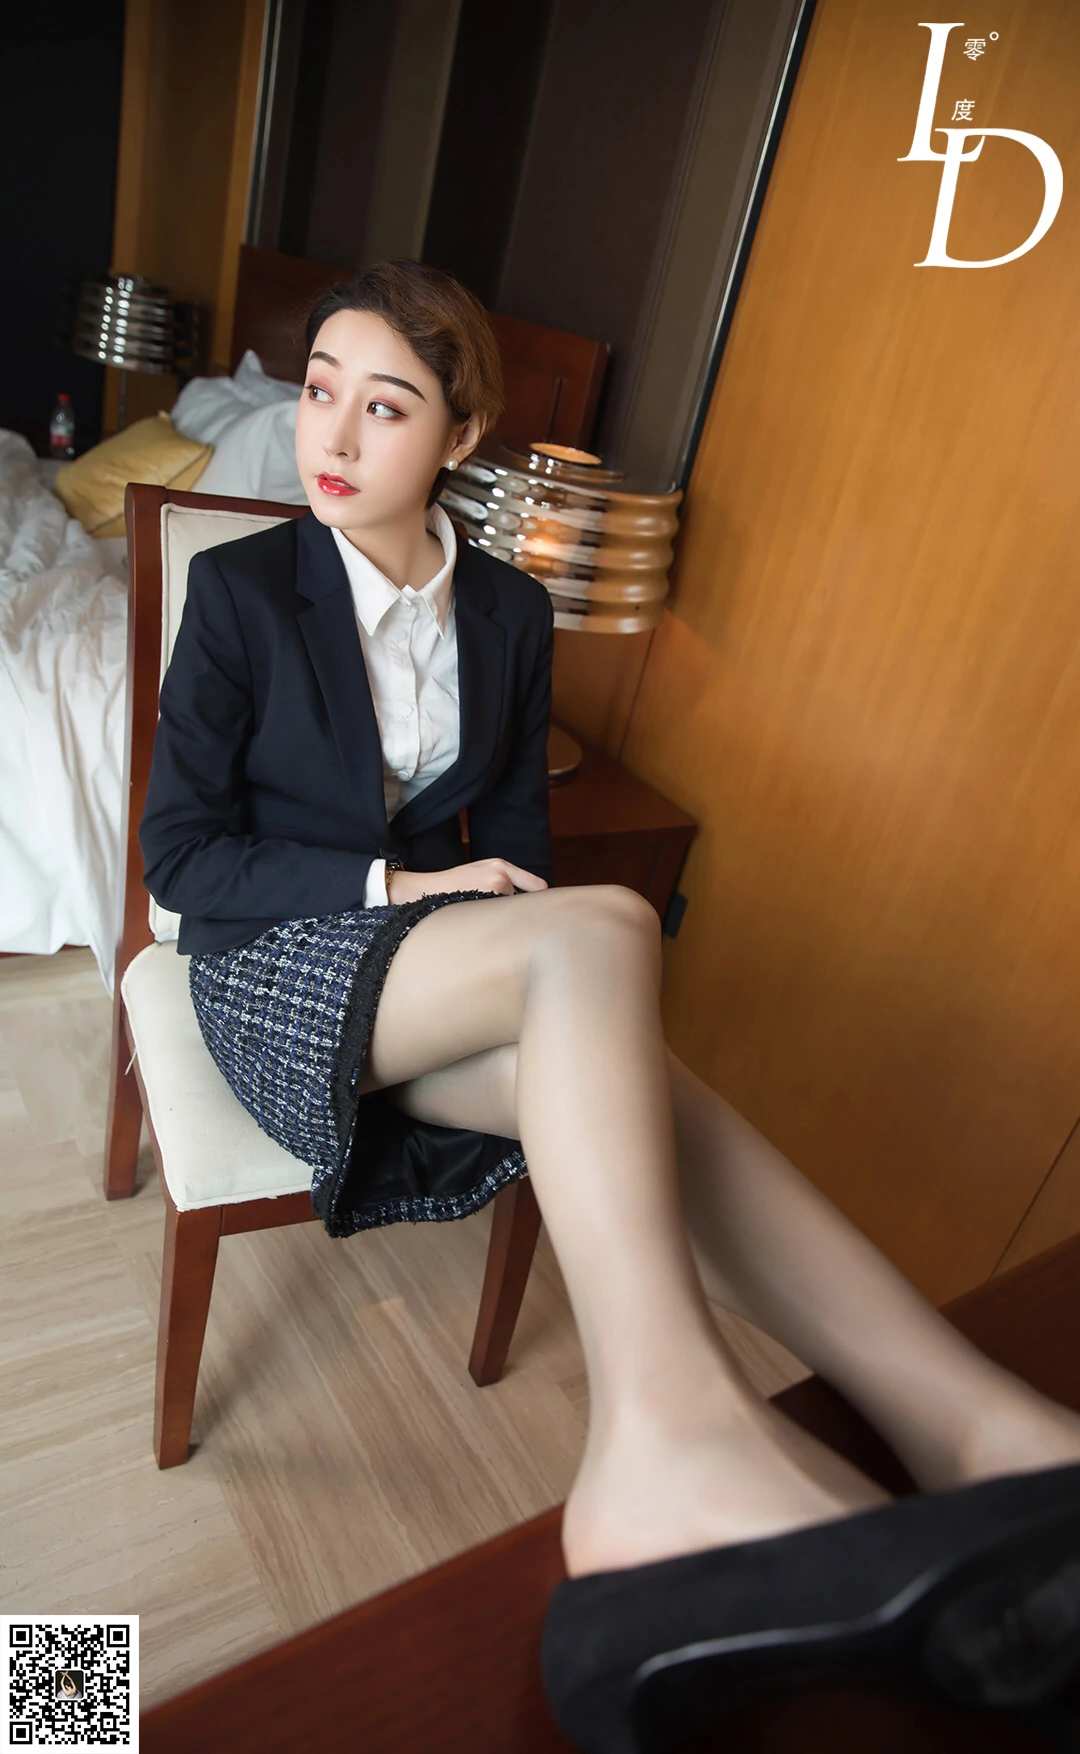 [LD零度摄影]NO.038 性感女秘书 模特依婷 黑色制服与短裙加黑丝美腿私房写真集,